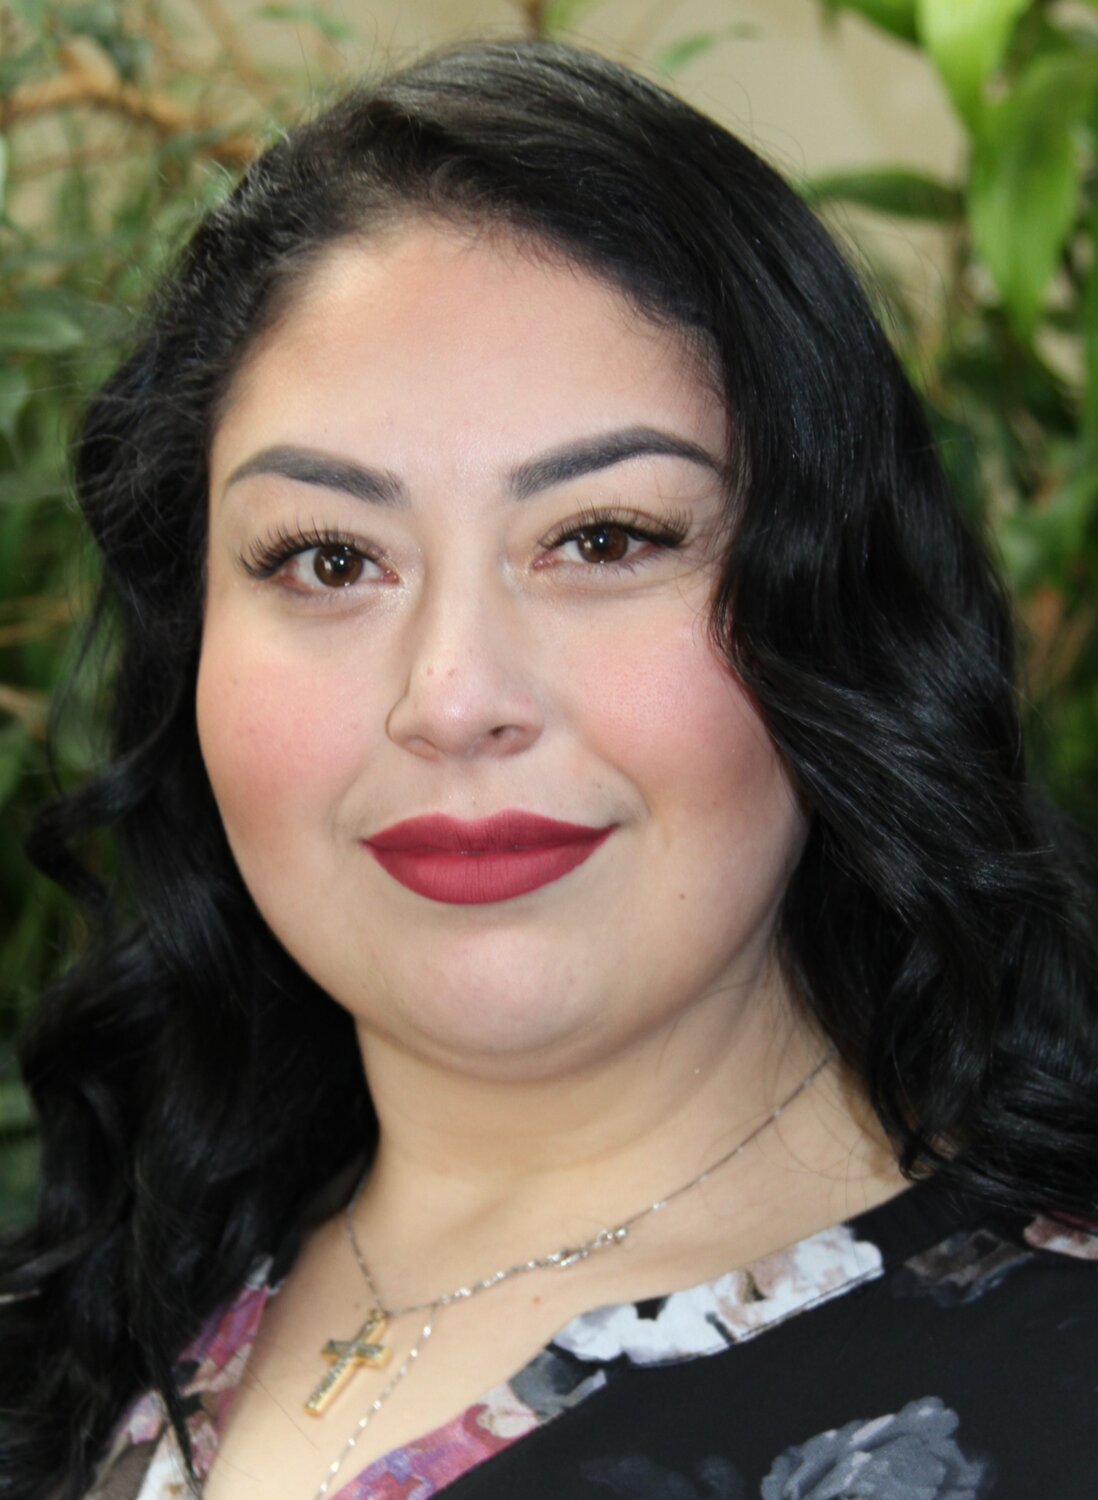 Isabel Sanchez, Funeral Assistant